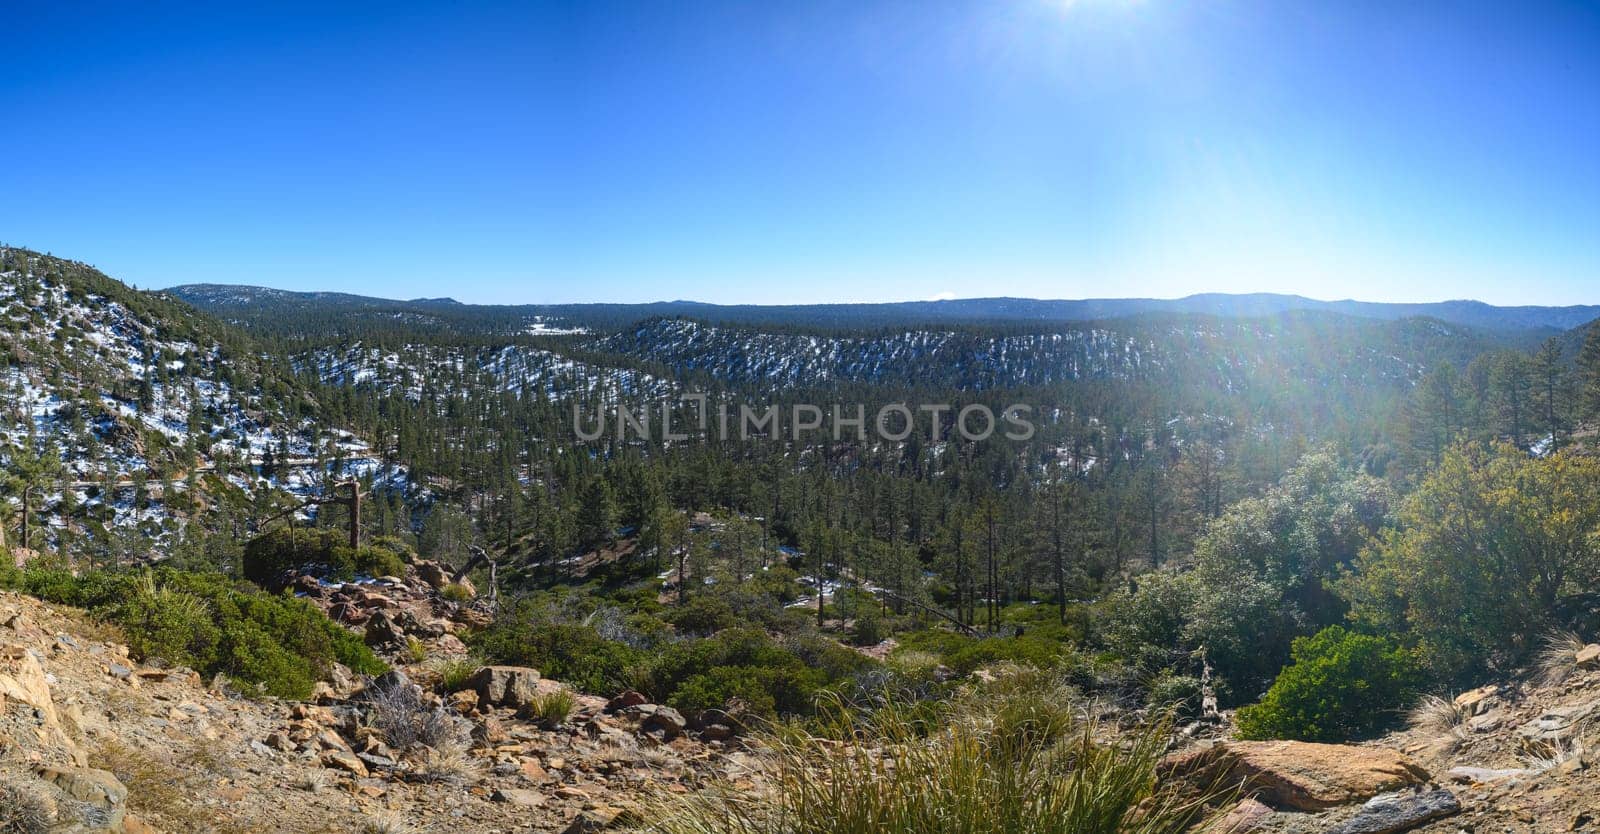 Landscape of Snowy Pine Forest in Sierra de San Pedro Martir, Baja California by RobertPB